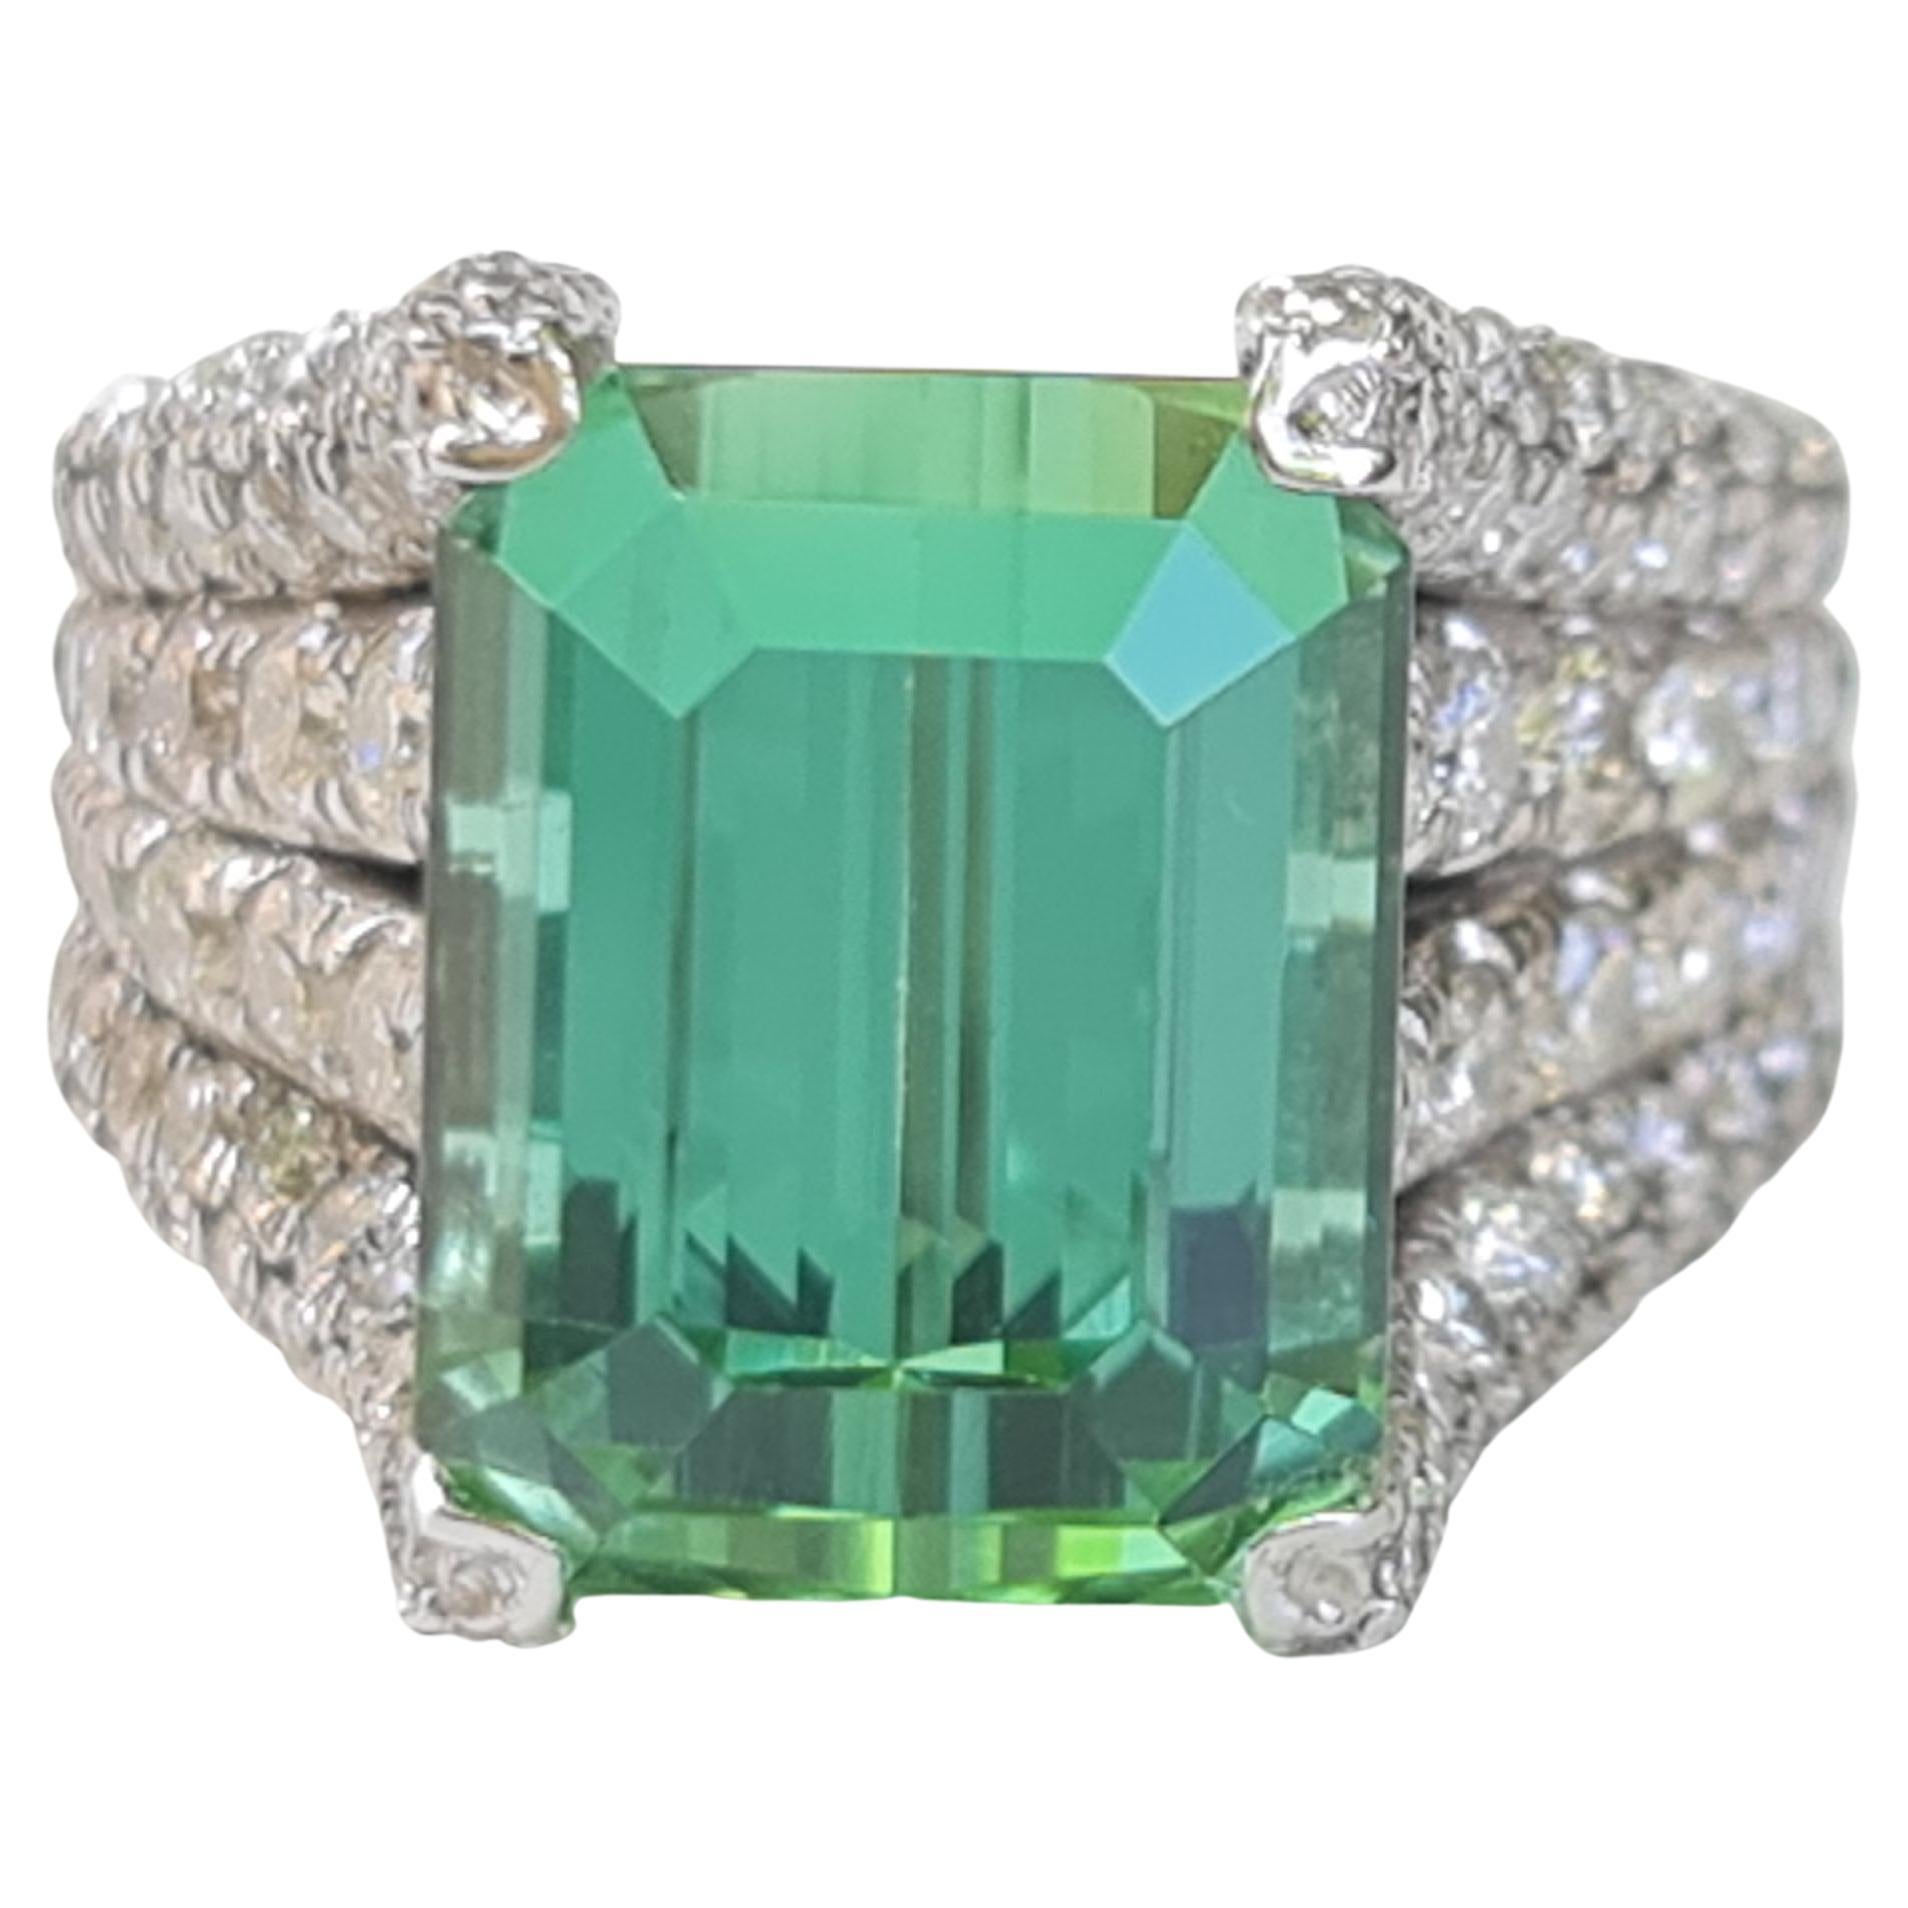 7.32 Carat Natural Green Tourmaline Ring with 1.92 Carat Natural Diamonds For Sale